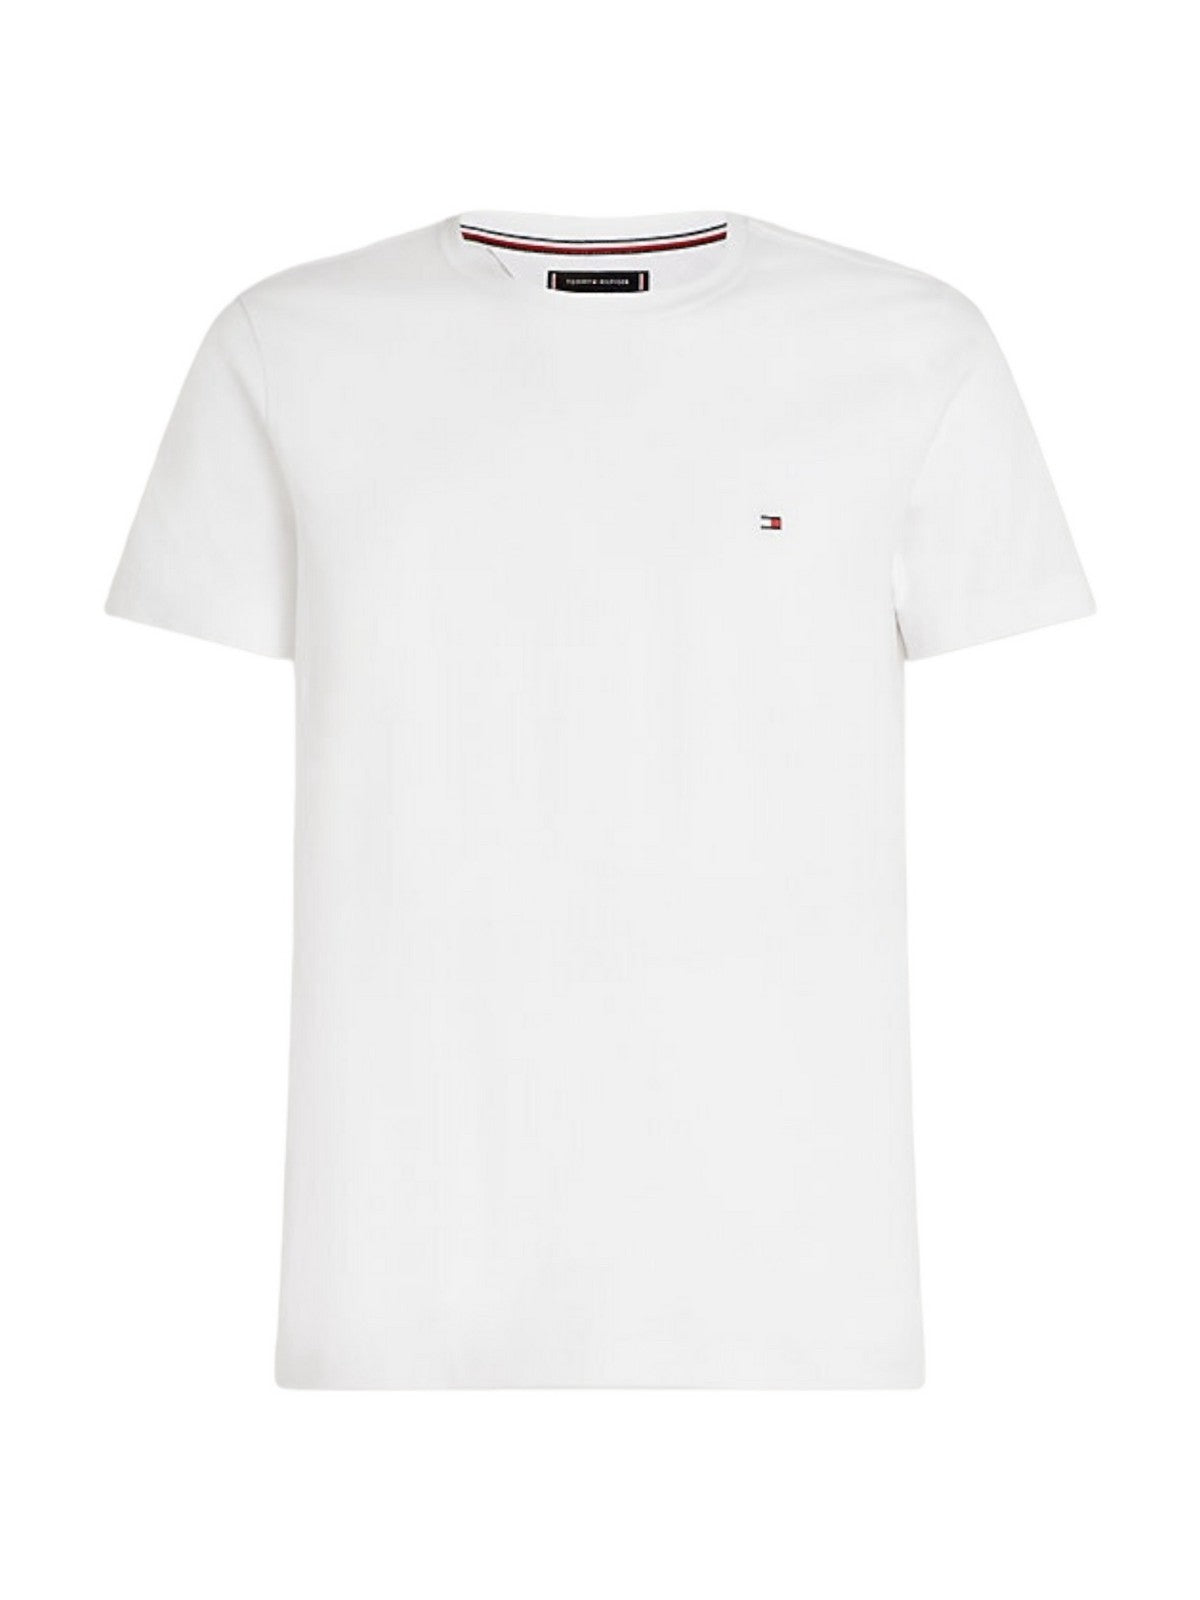 TOMMY HILFIGER T-Shirt et Polo Hommes MW0MW27539 YBR Blanc